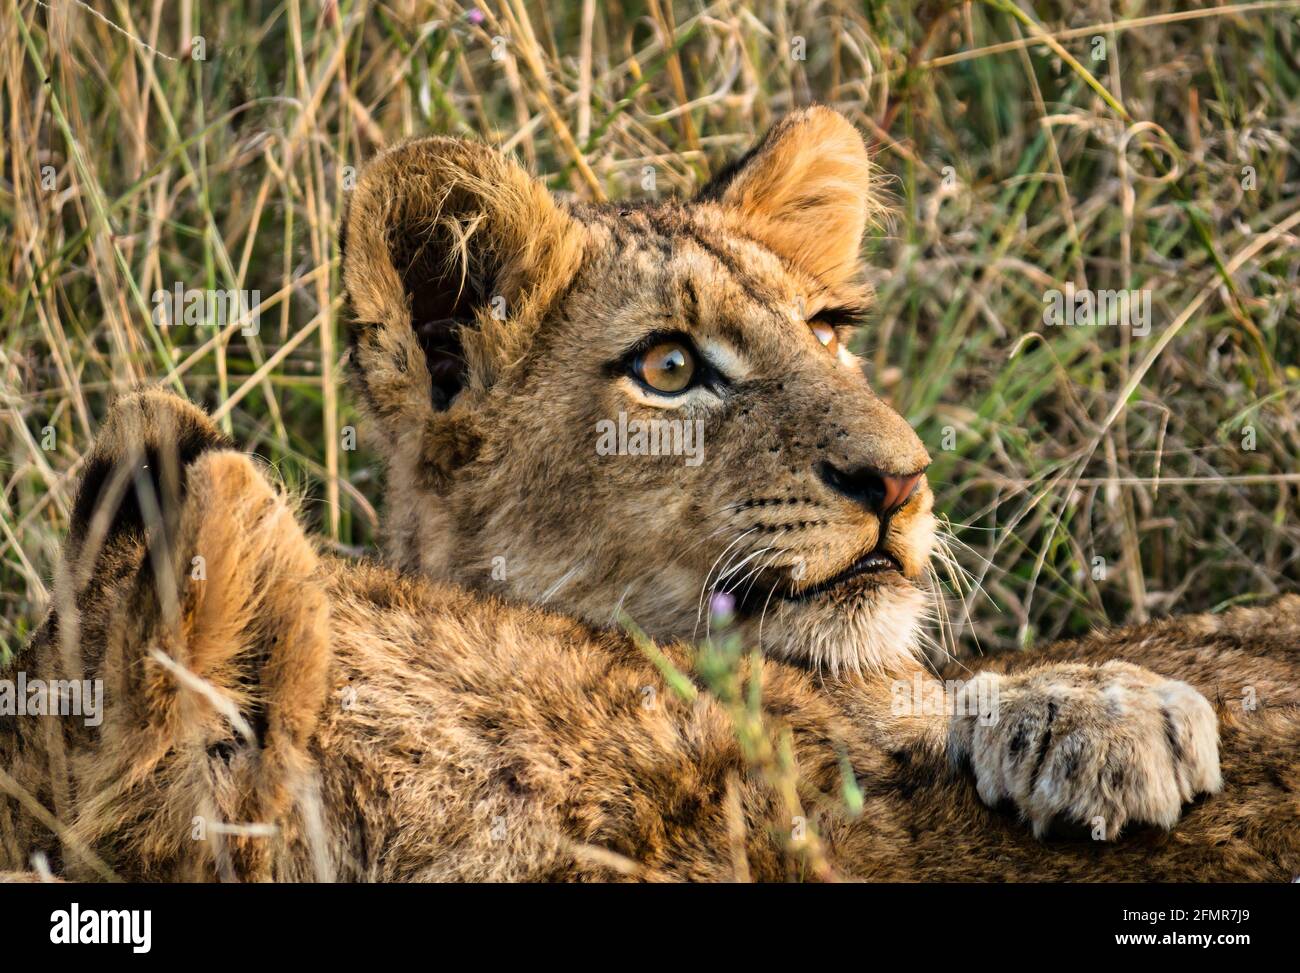 Gros plan du lion cub, Panthera leo, réserve de gibier, parc national du Grand Kruger, Afrique du Sud Banque D'Images